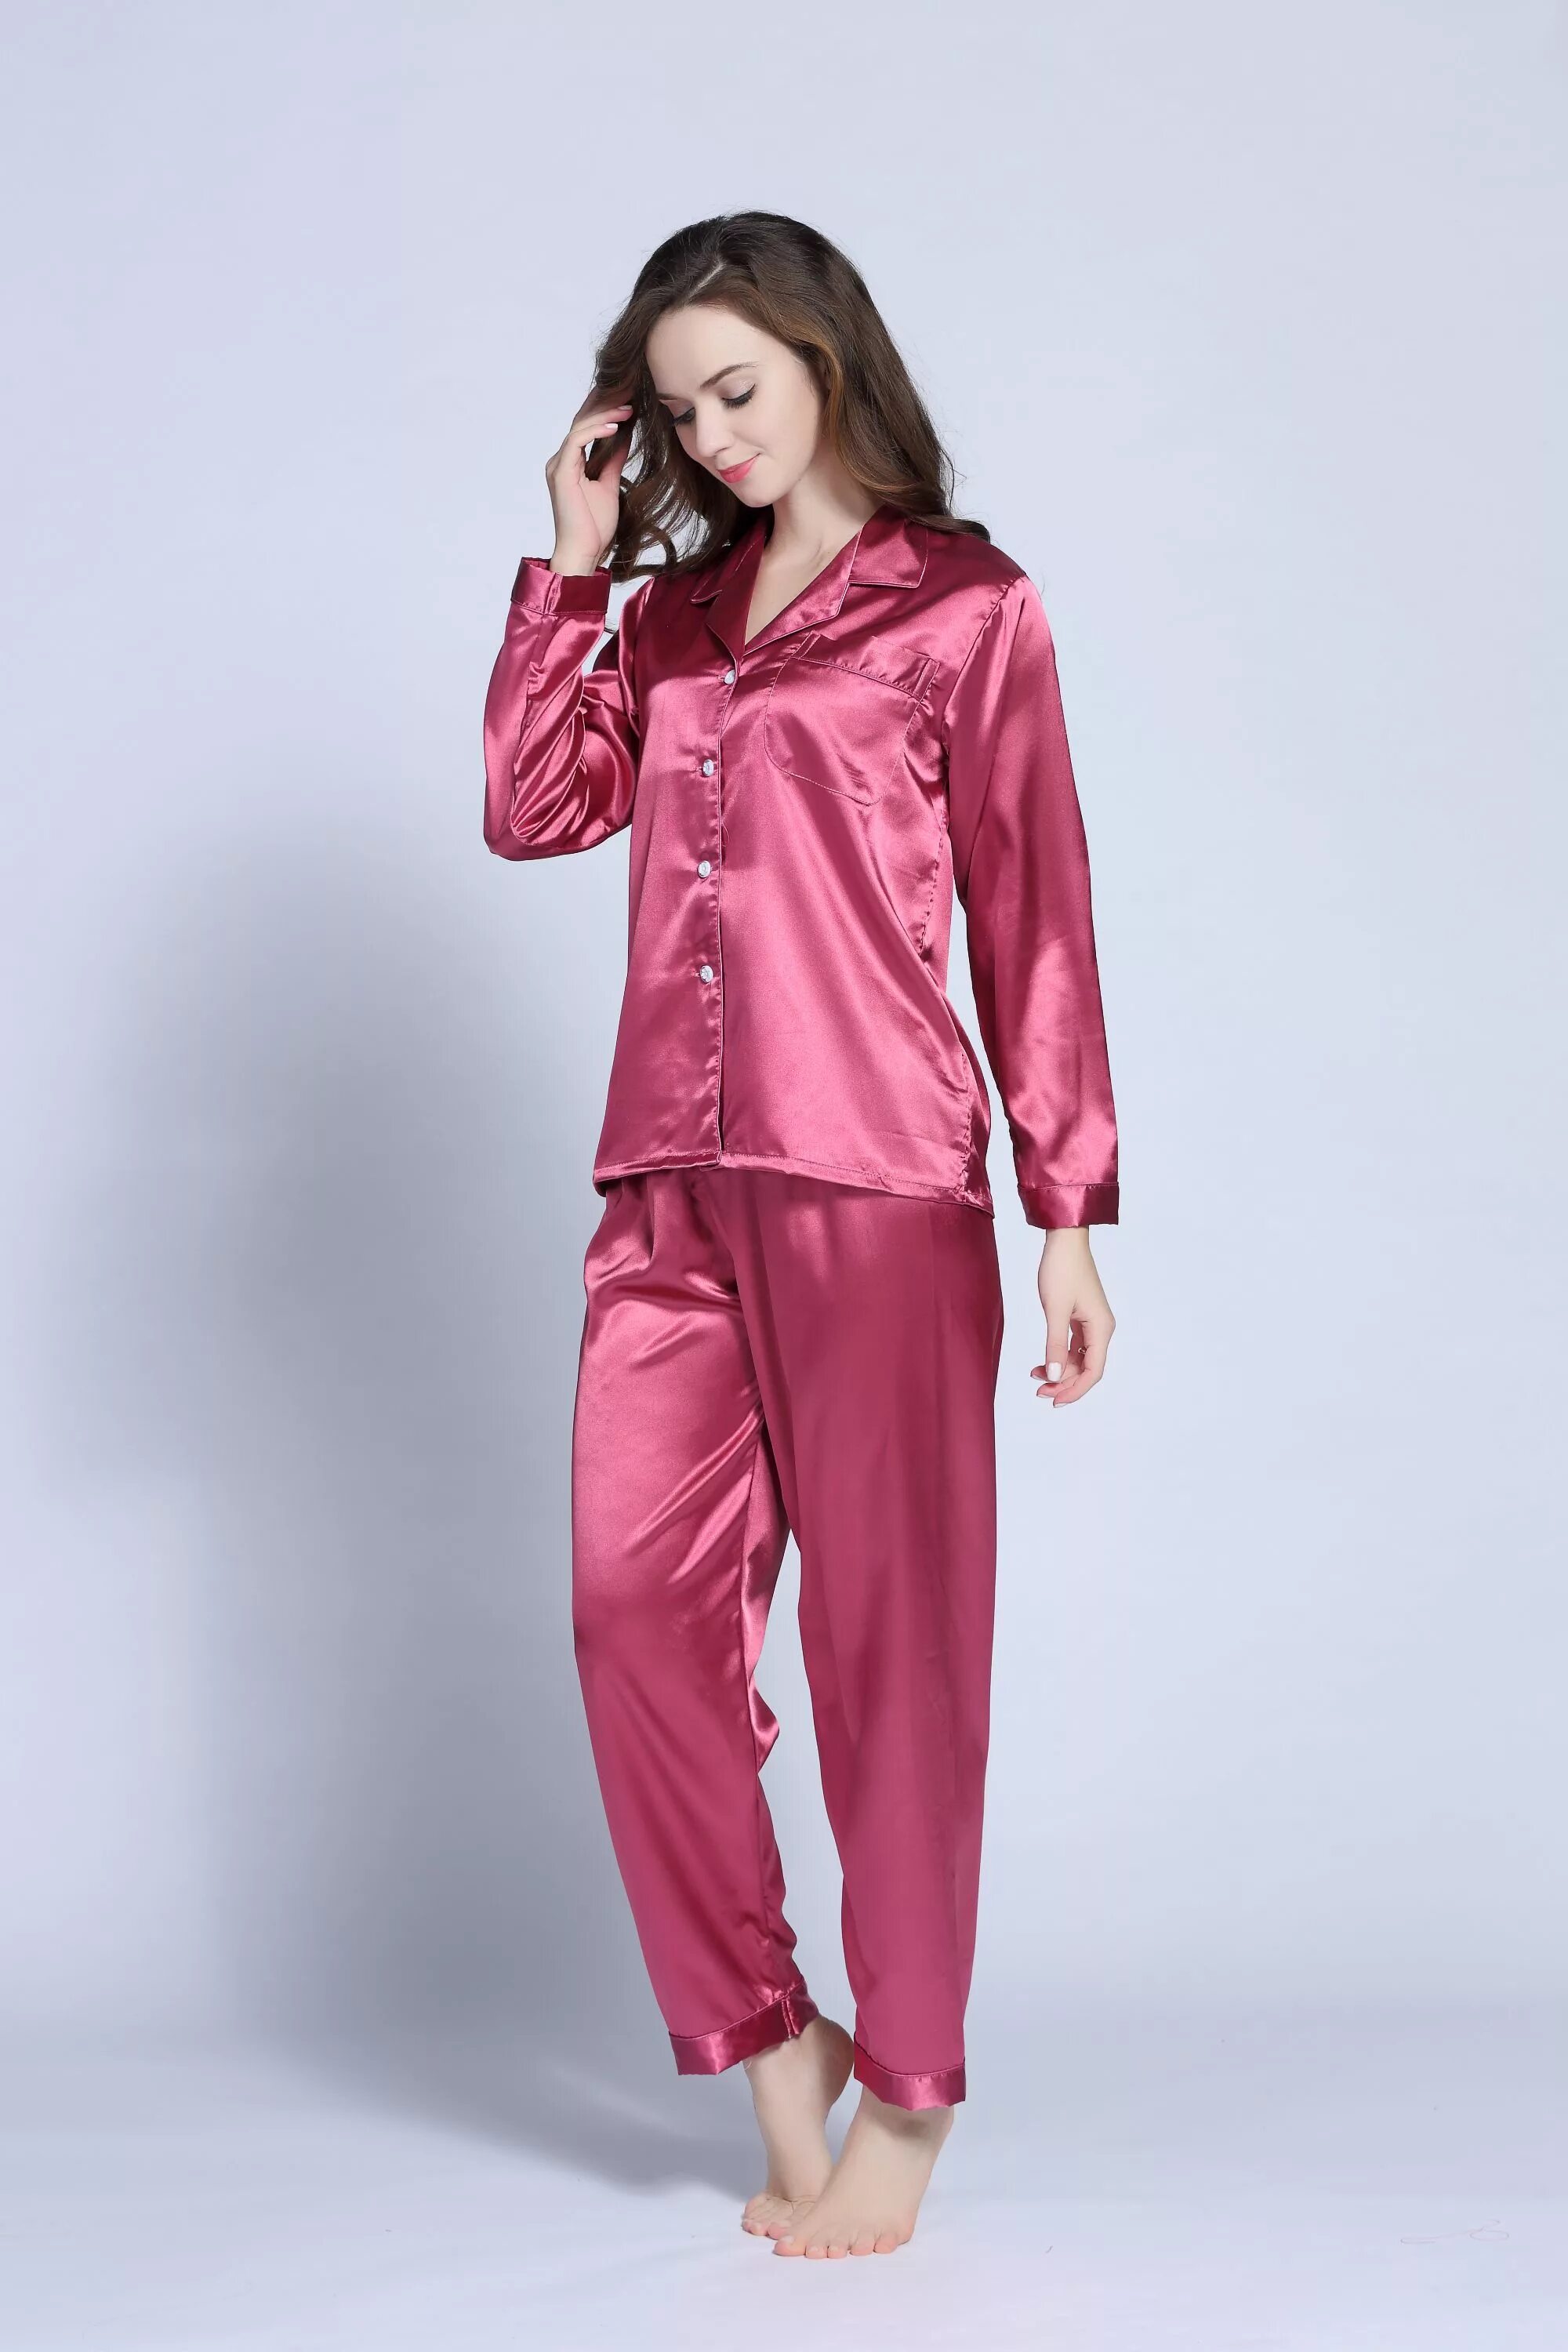 Silk feeling. Satin Pajamas. Toteme Silk Pijama. Satin Bump Pajama. Satin long Pajama Set Dragon Victoria Secret.